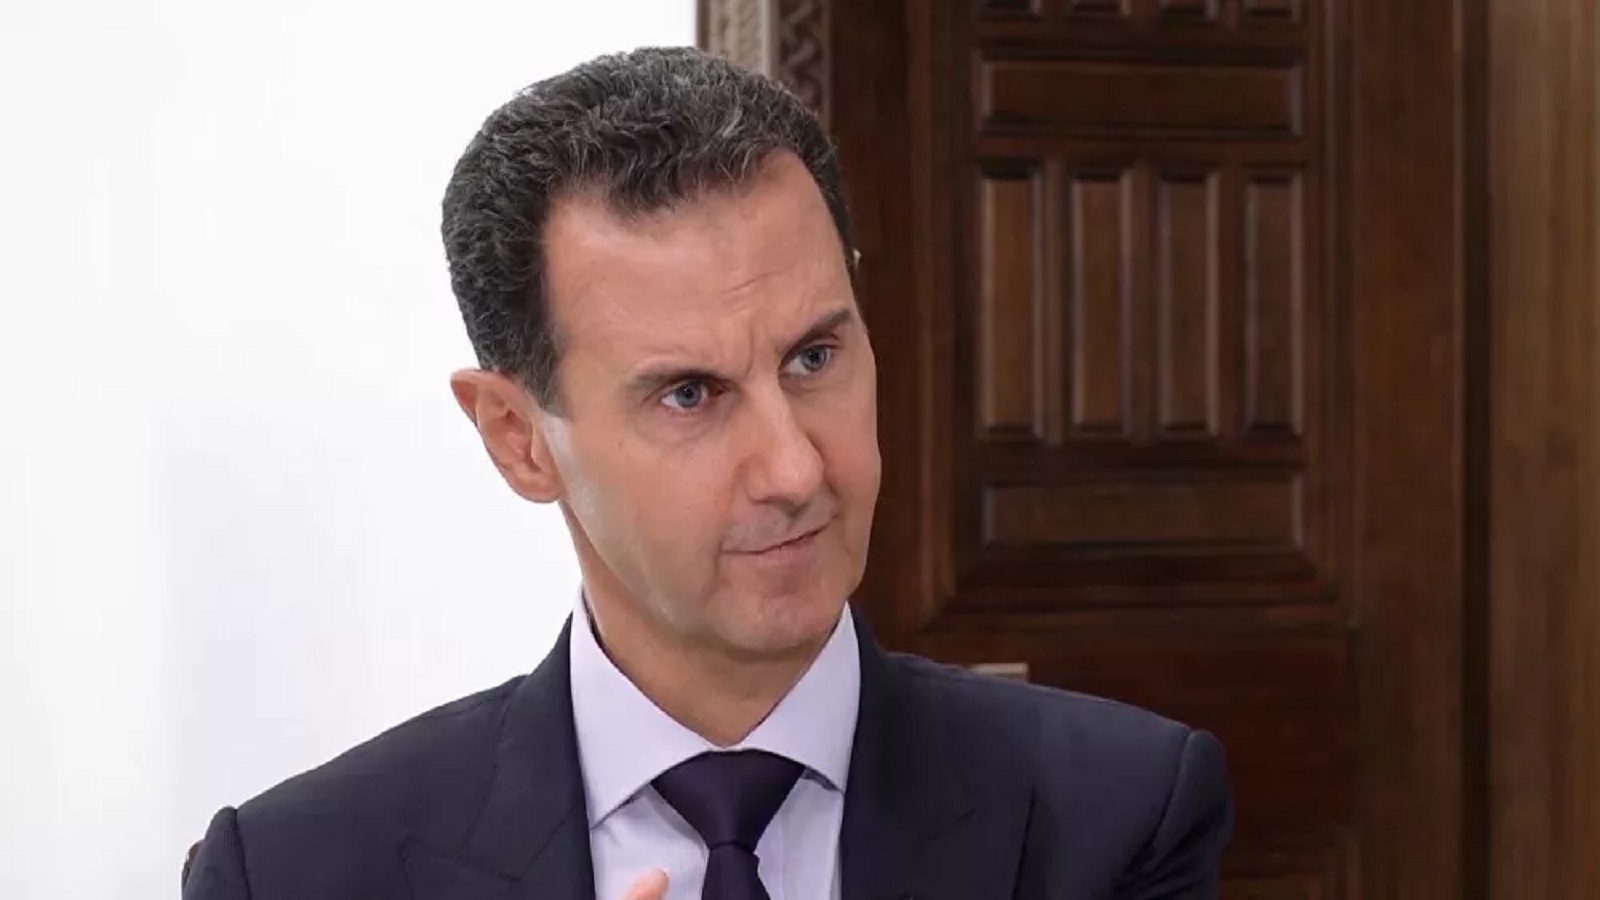 بديل للأسد يلوح في الأفق..ينتظر الاعتراف الروسي والاميركي